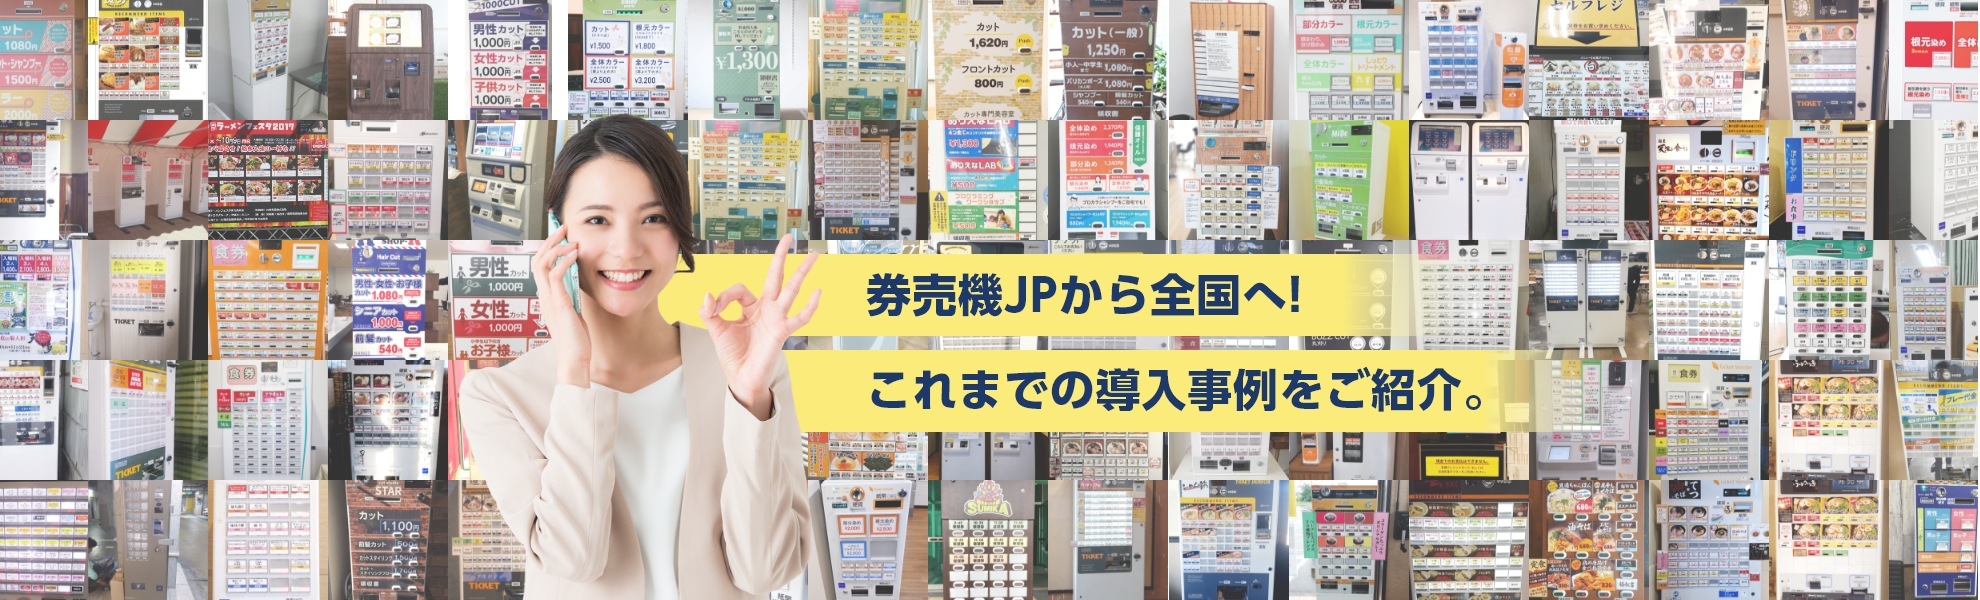 千葉県のThe Color様に小型券売機を導入させていただきましたの紹介ビジュアル